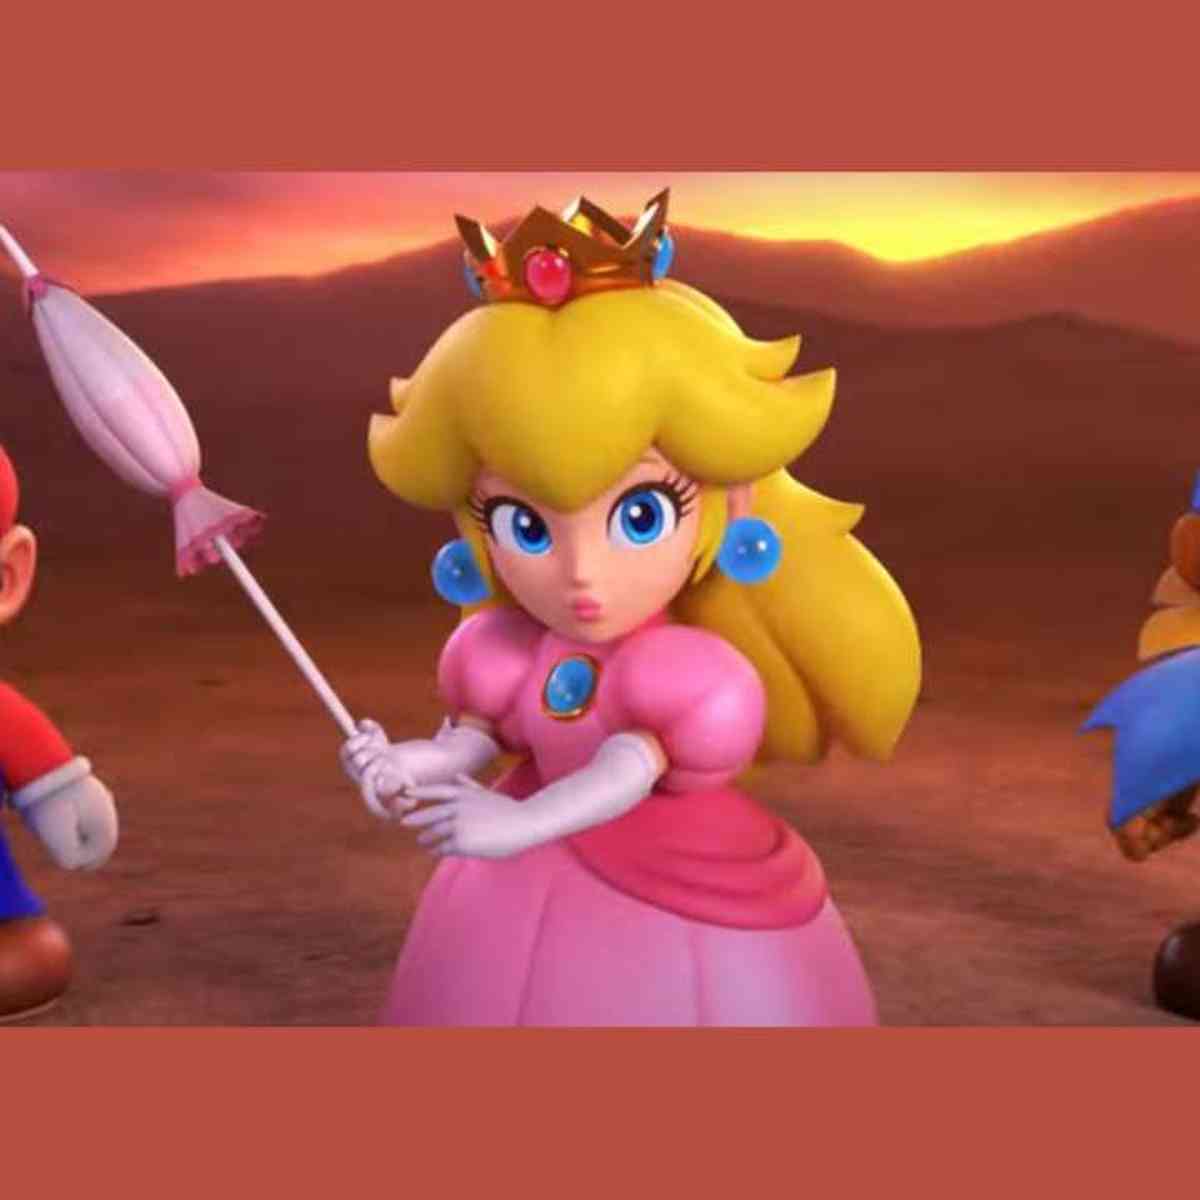 Super Mario Odyssey' é lançado para Nintendo Switch; leia críticas